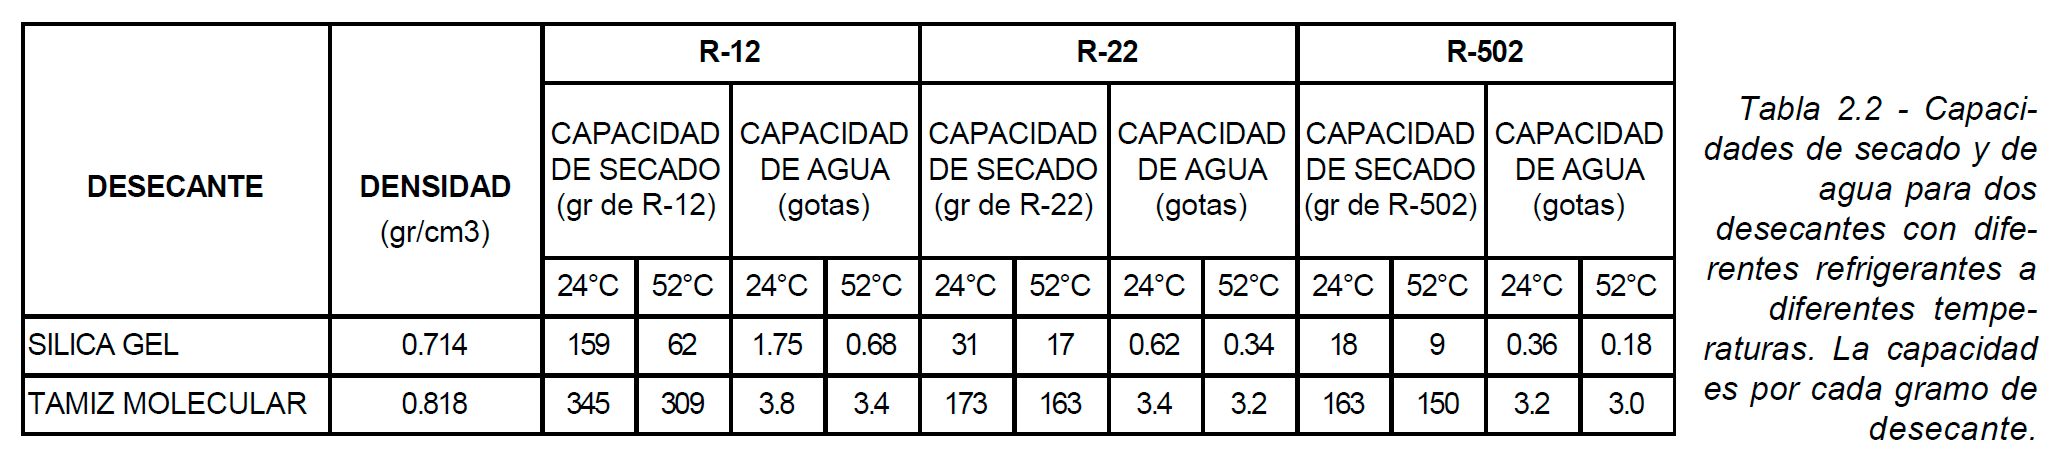 Capacidades de secado y de agua para dos desecantes  con  diferentes  refrigerantes  a diferentes  temperaturas.